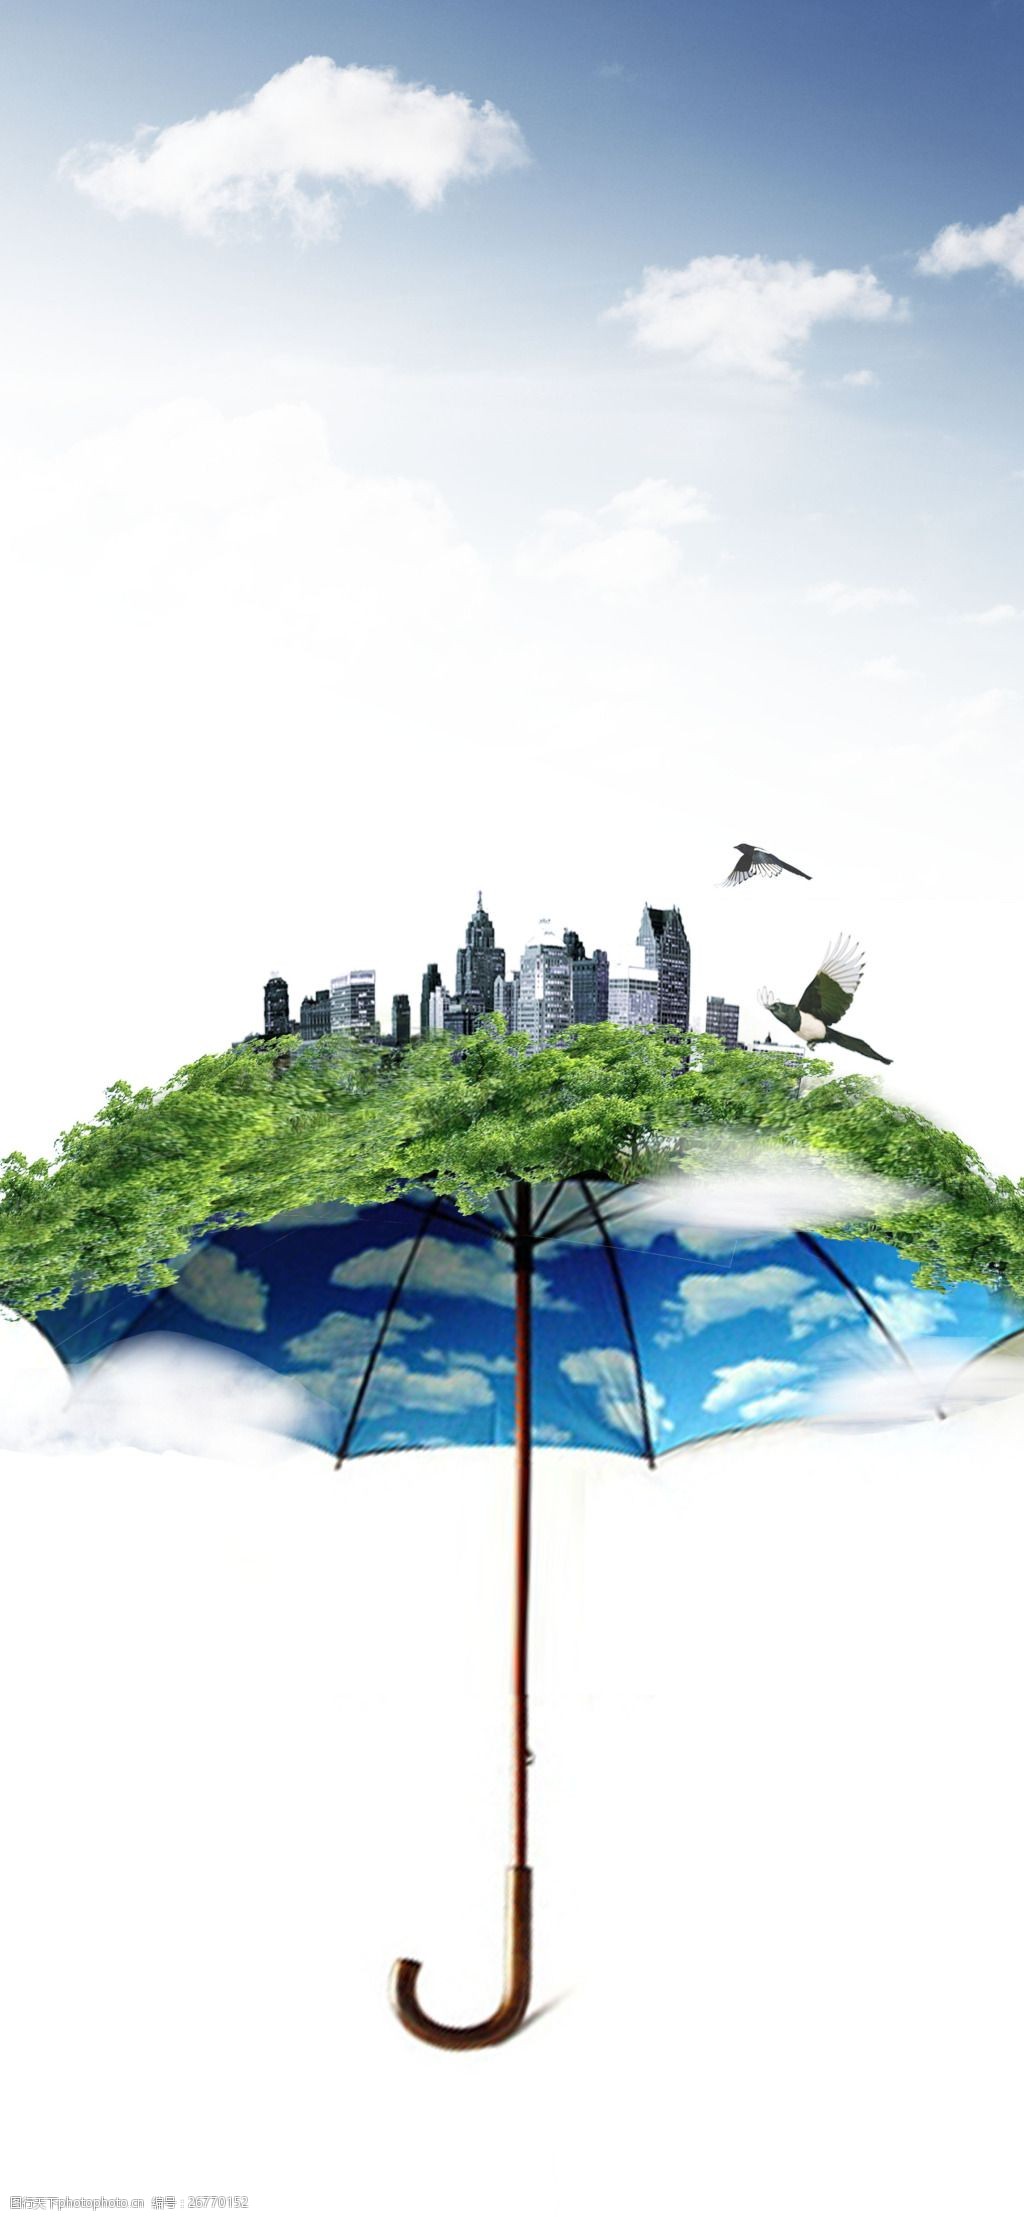 关键词:环保概念海报 绿色环保 环境保护 绿色能源 生态保护 生态平衡